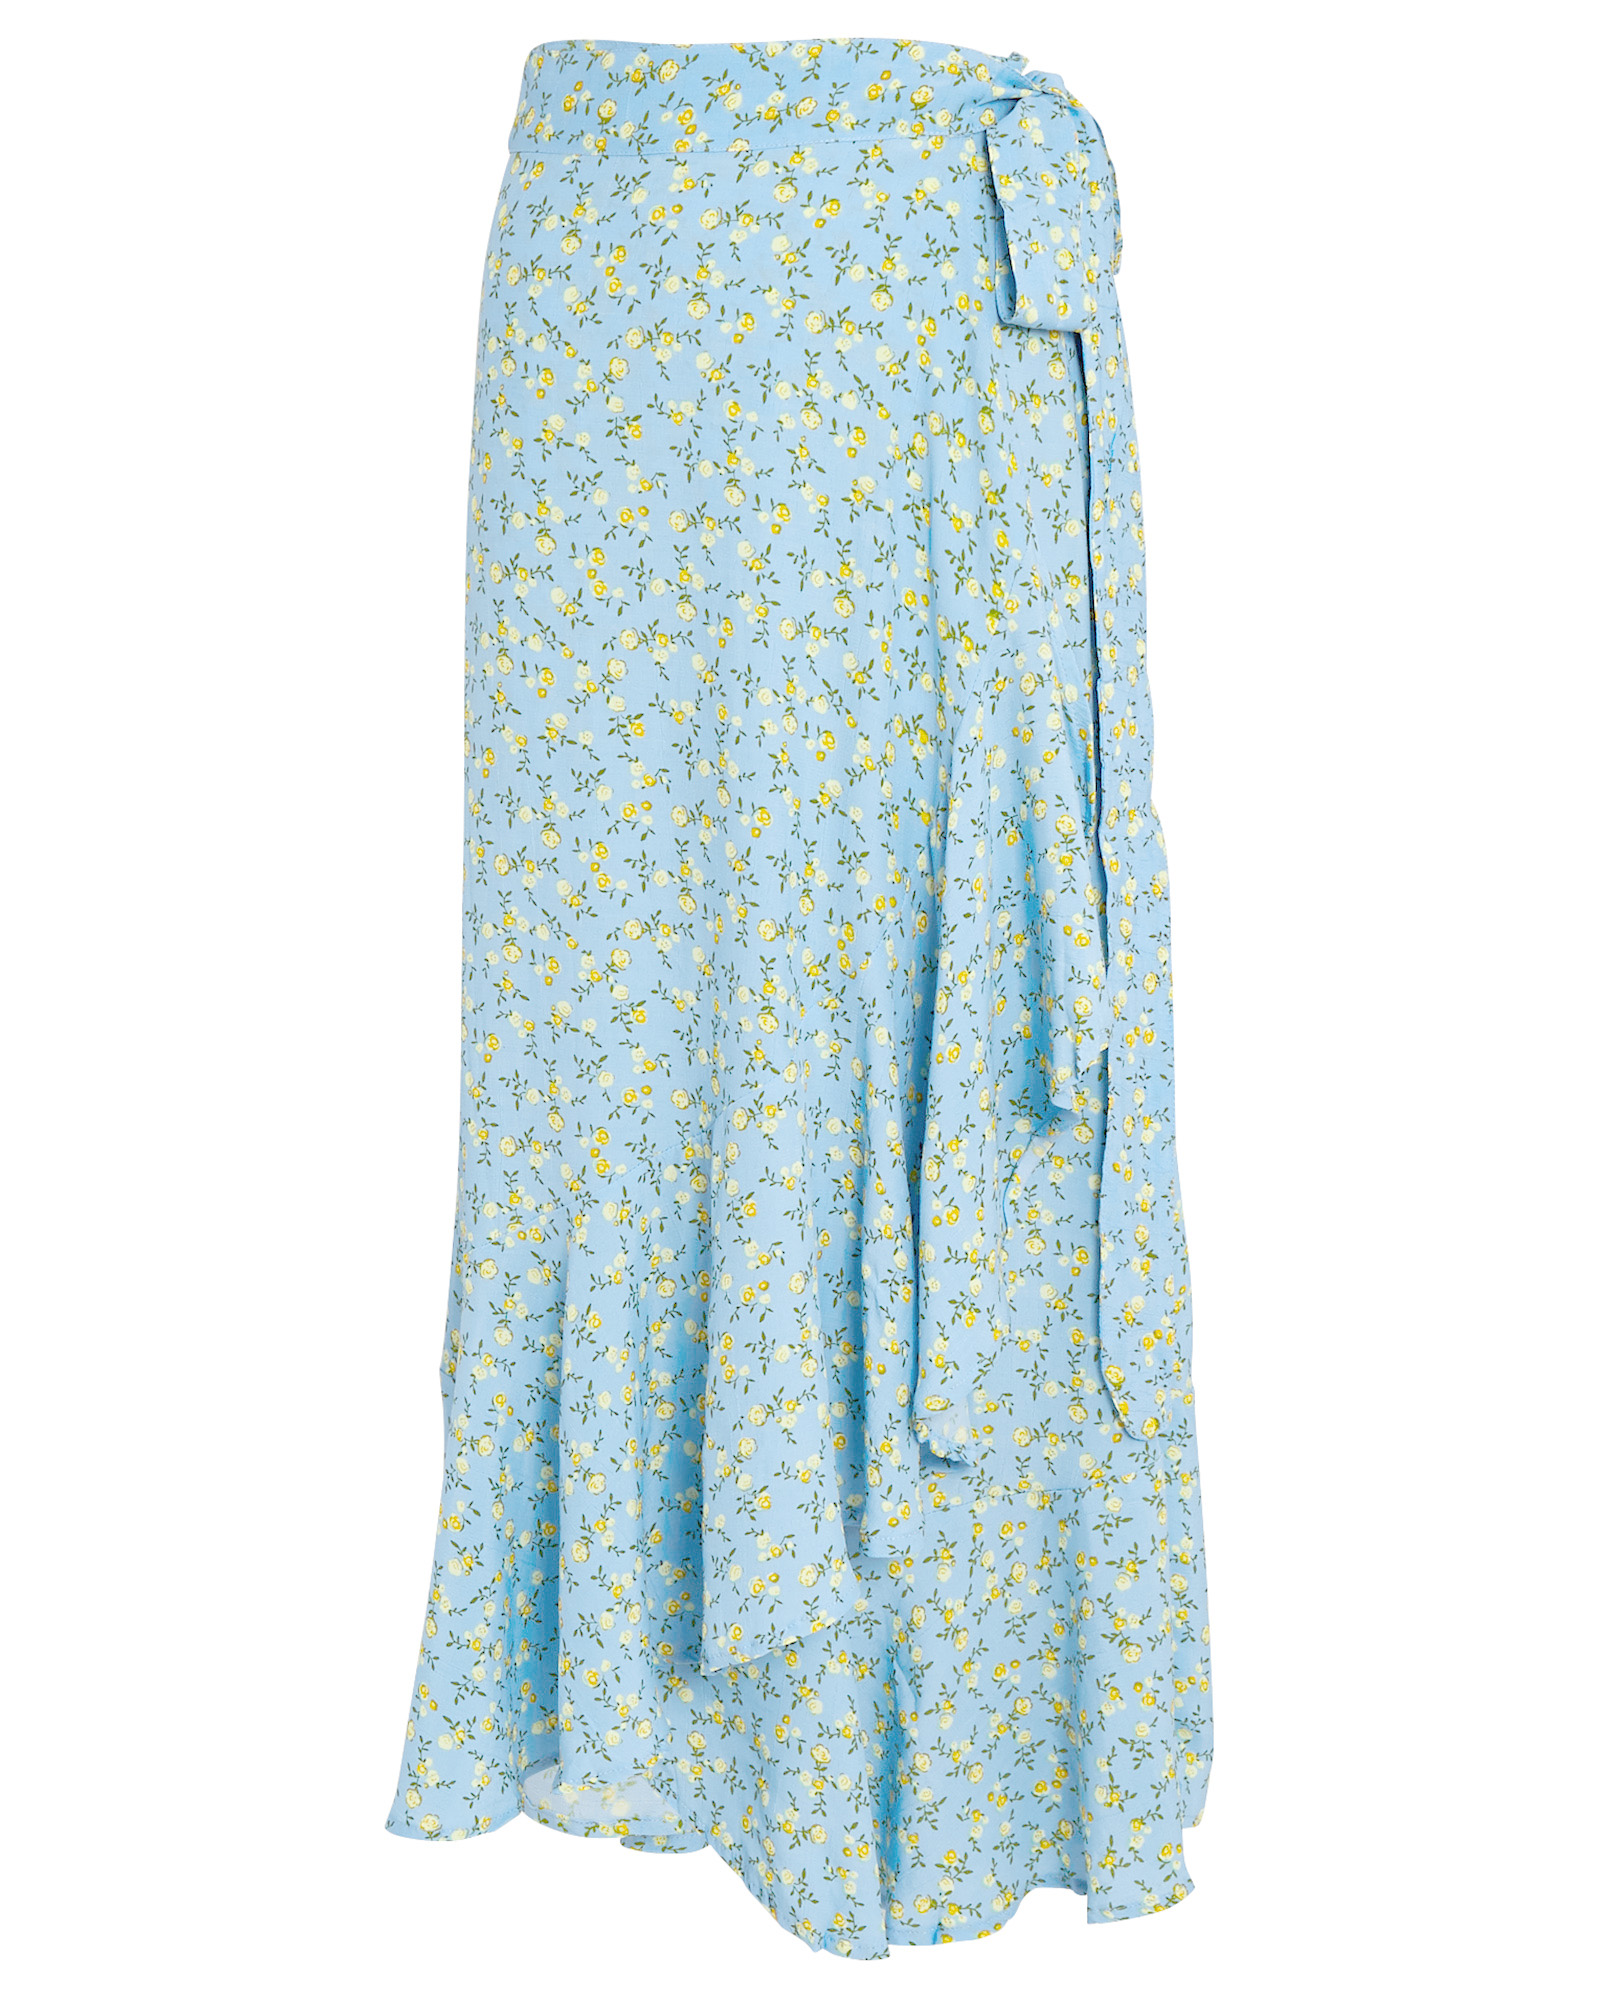 FAITHFULL THE BRAND Aubrie Floral Wrap Skirt | INTERMIX®